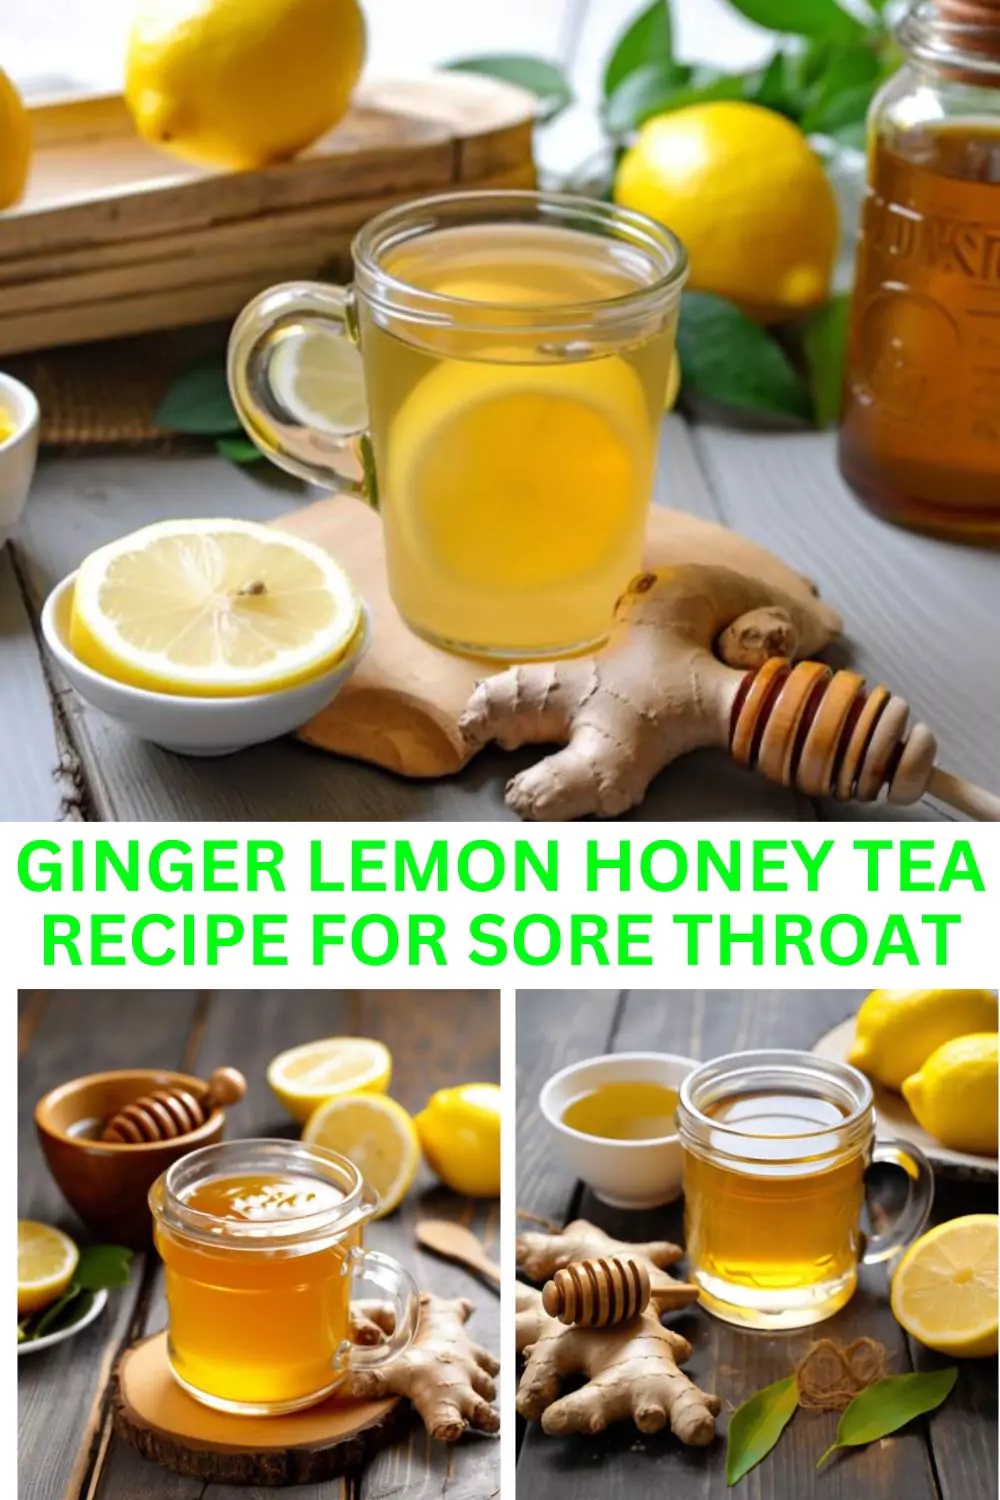 Best Ginger Lemon Honey Tea Recipe For Sore Throat